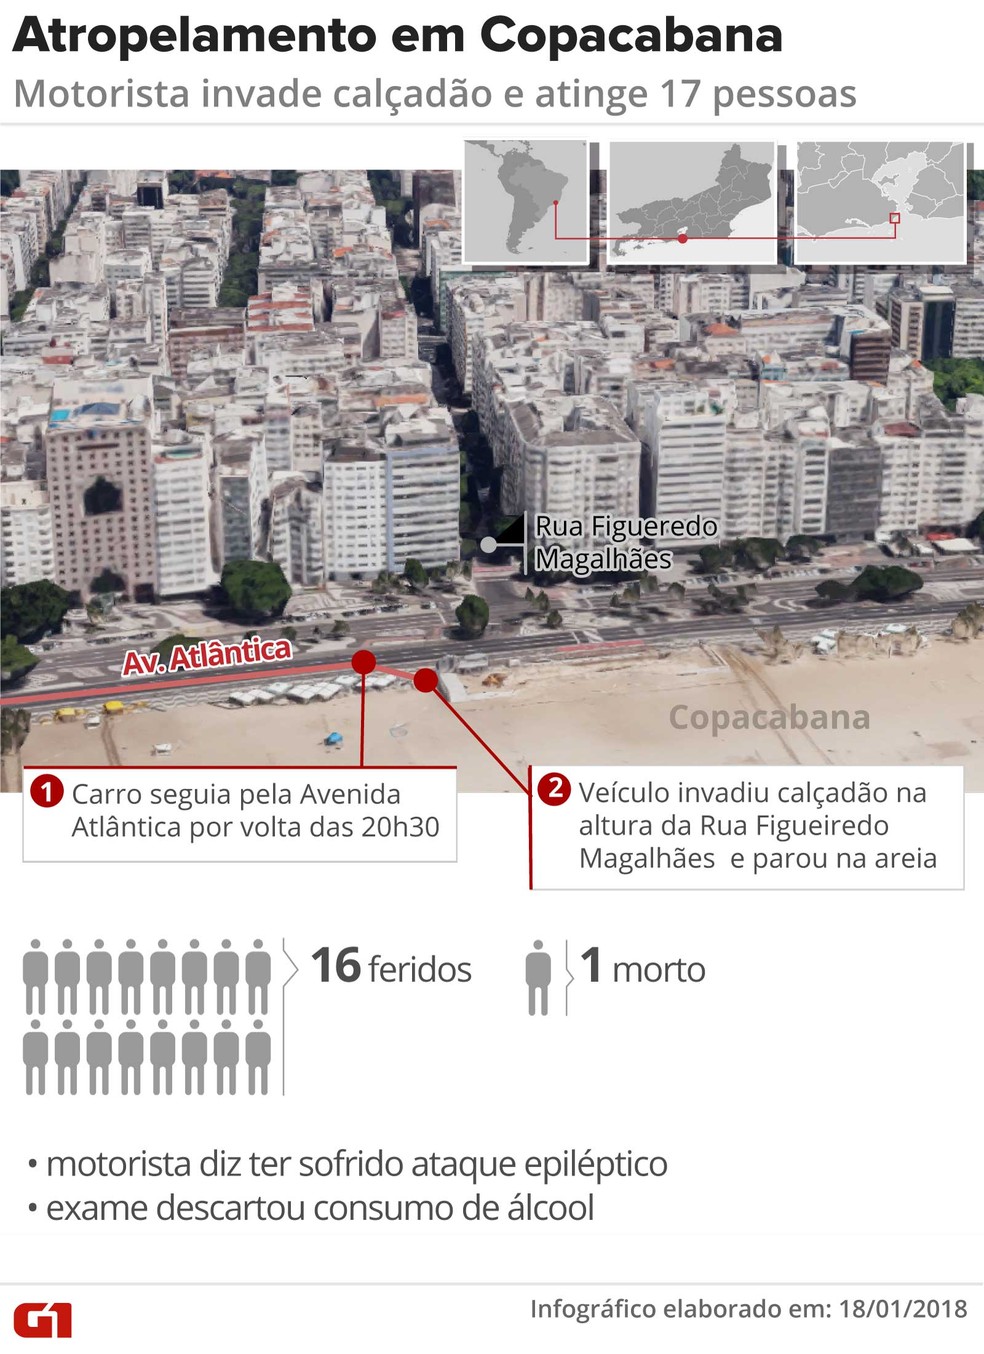 Motorista invadiu calado em Copacabana e atropelou 17 pessoas (Foto: Claudia Peixoto/Arte/G1)